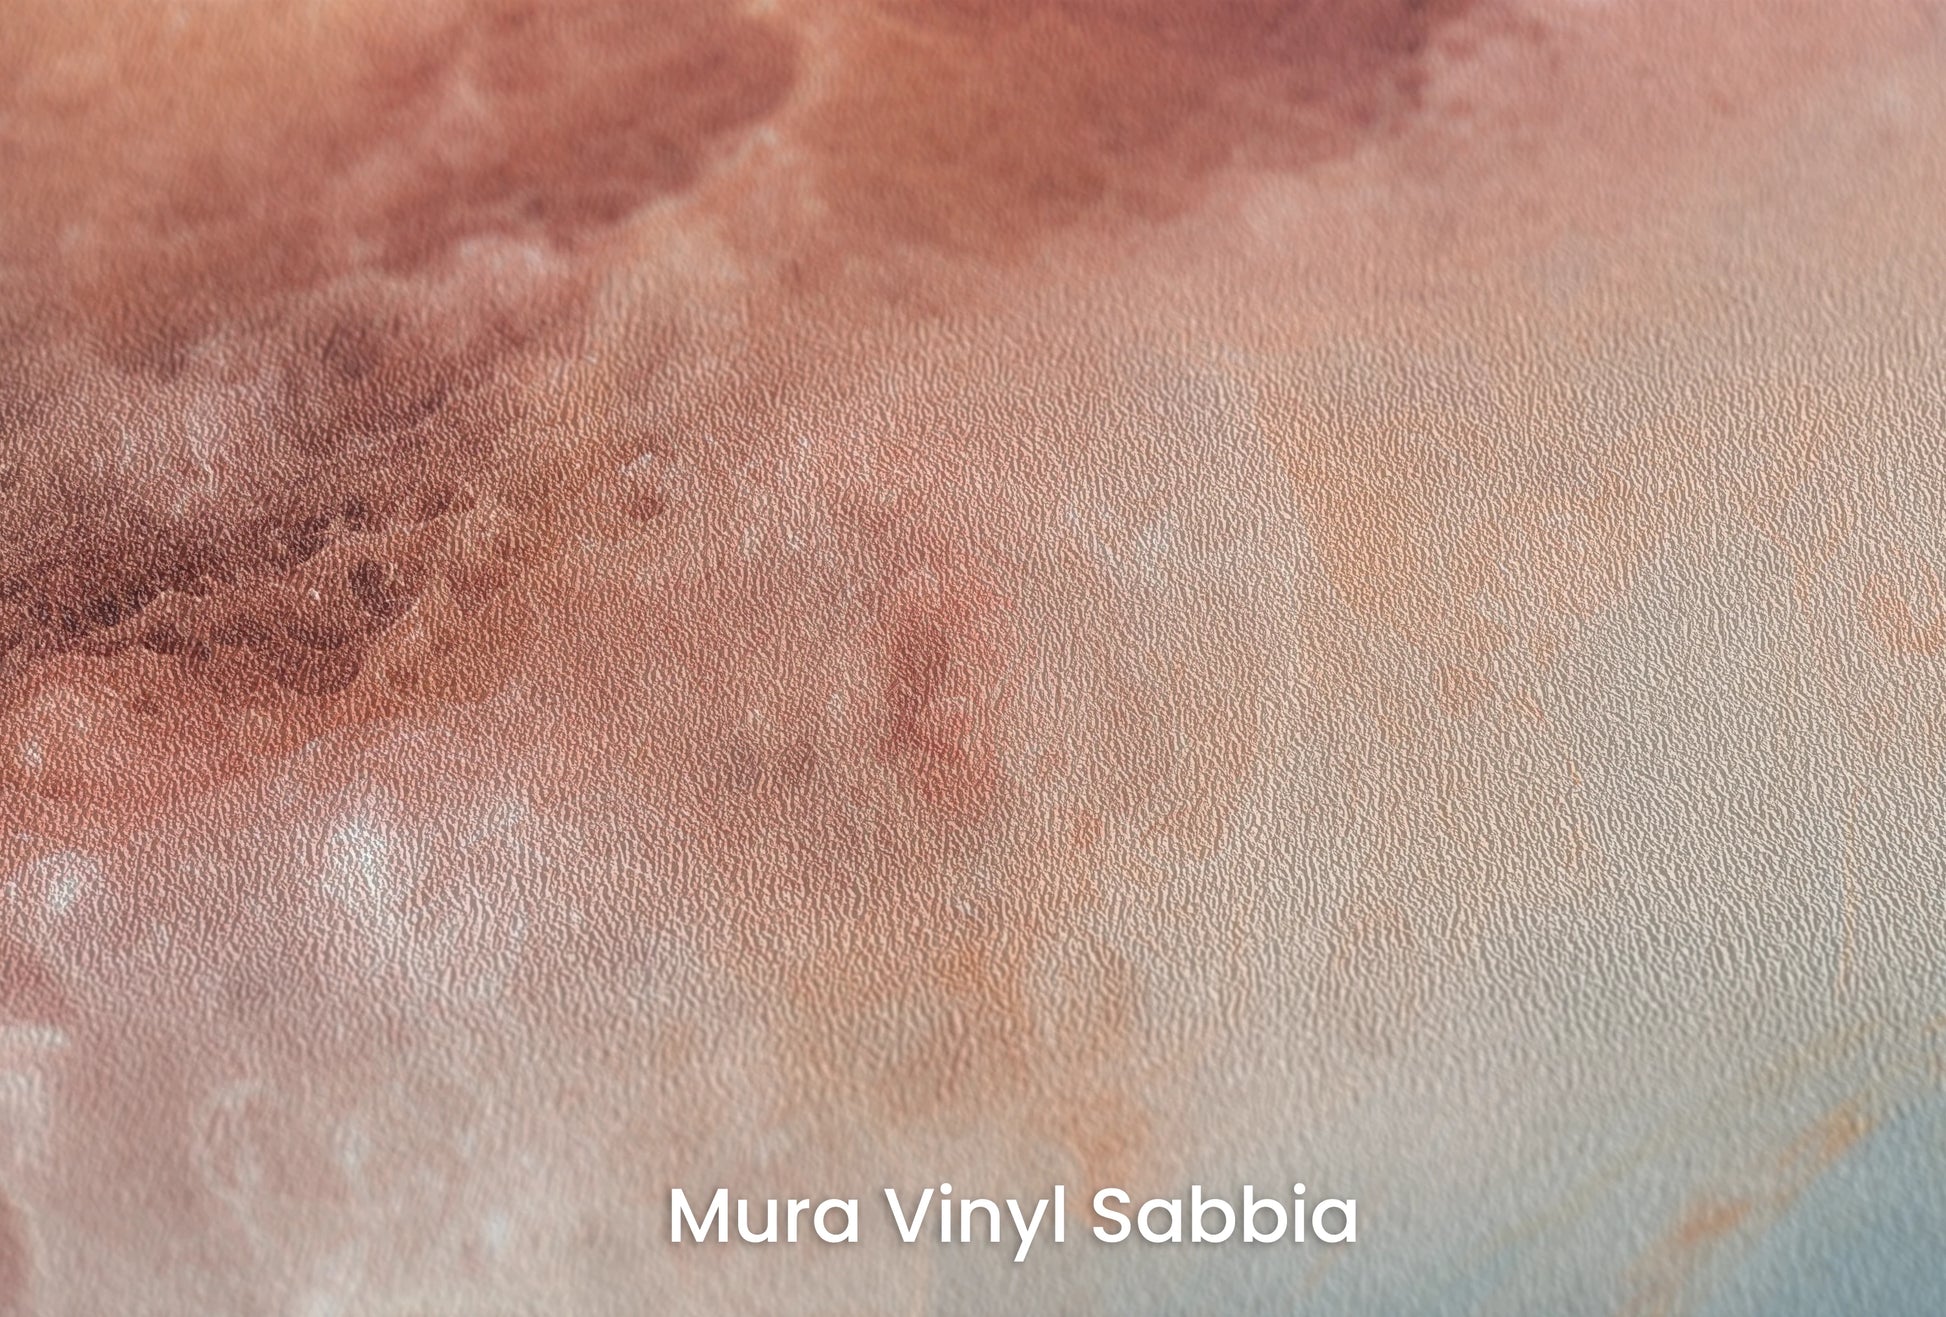 Zbliżenie na artystyczną fototapetę o nazwie Lunar Surface #2 na podłożu Mura Vinyl Sabbia struktura grubego ziarna piasku.